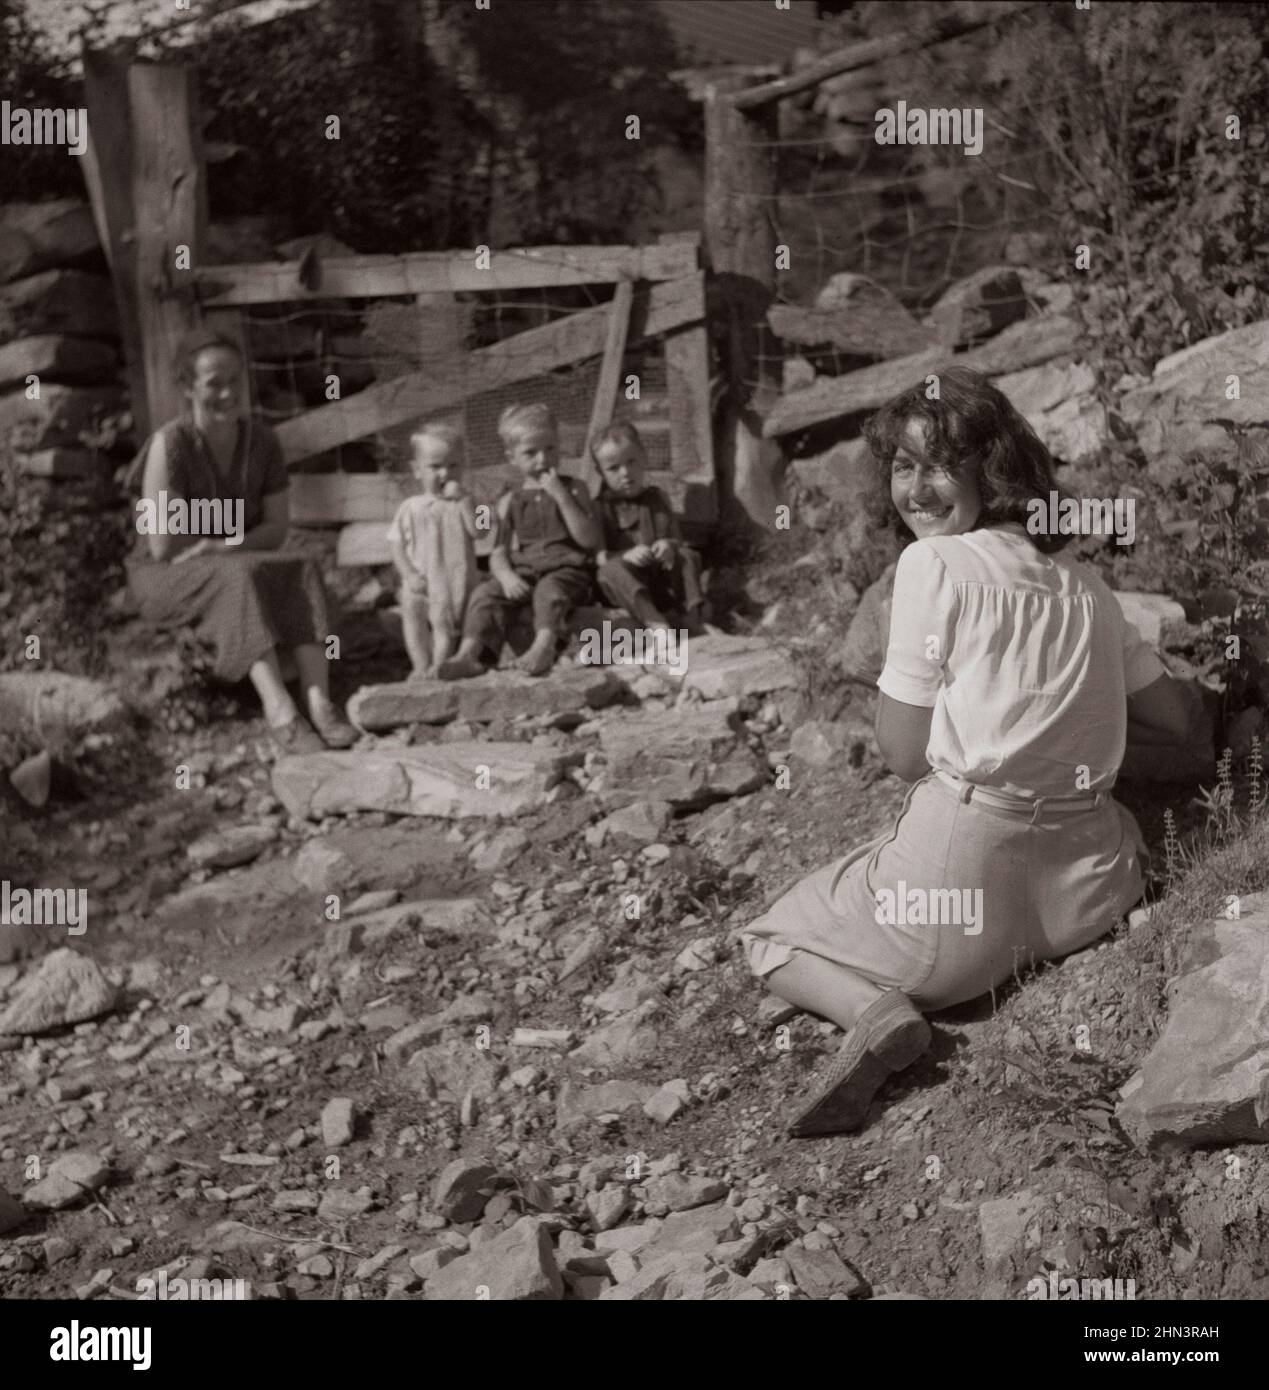 Photo d'époque de la vie américaine en 1940s. Marion Post Wolcott photographie des enfants de montagne sur des marches de pierre de leur maison. En haut de la crique de stinking, Pine Mo Banque D'Images